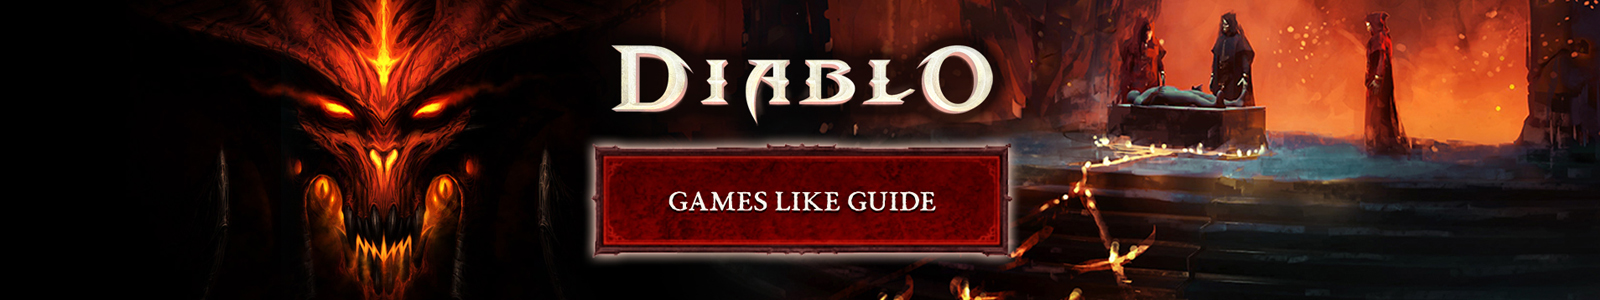 Guida a giochi simili a Diablo 4